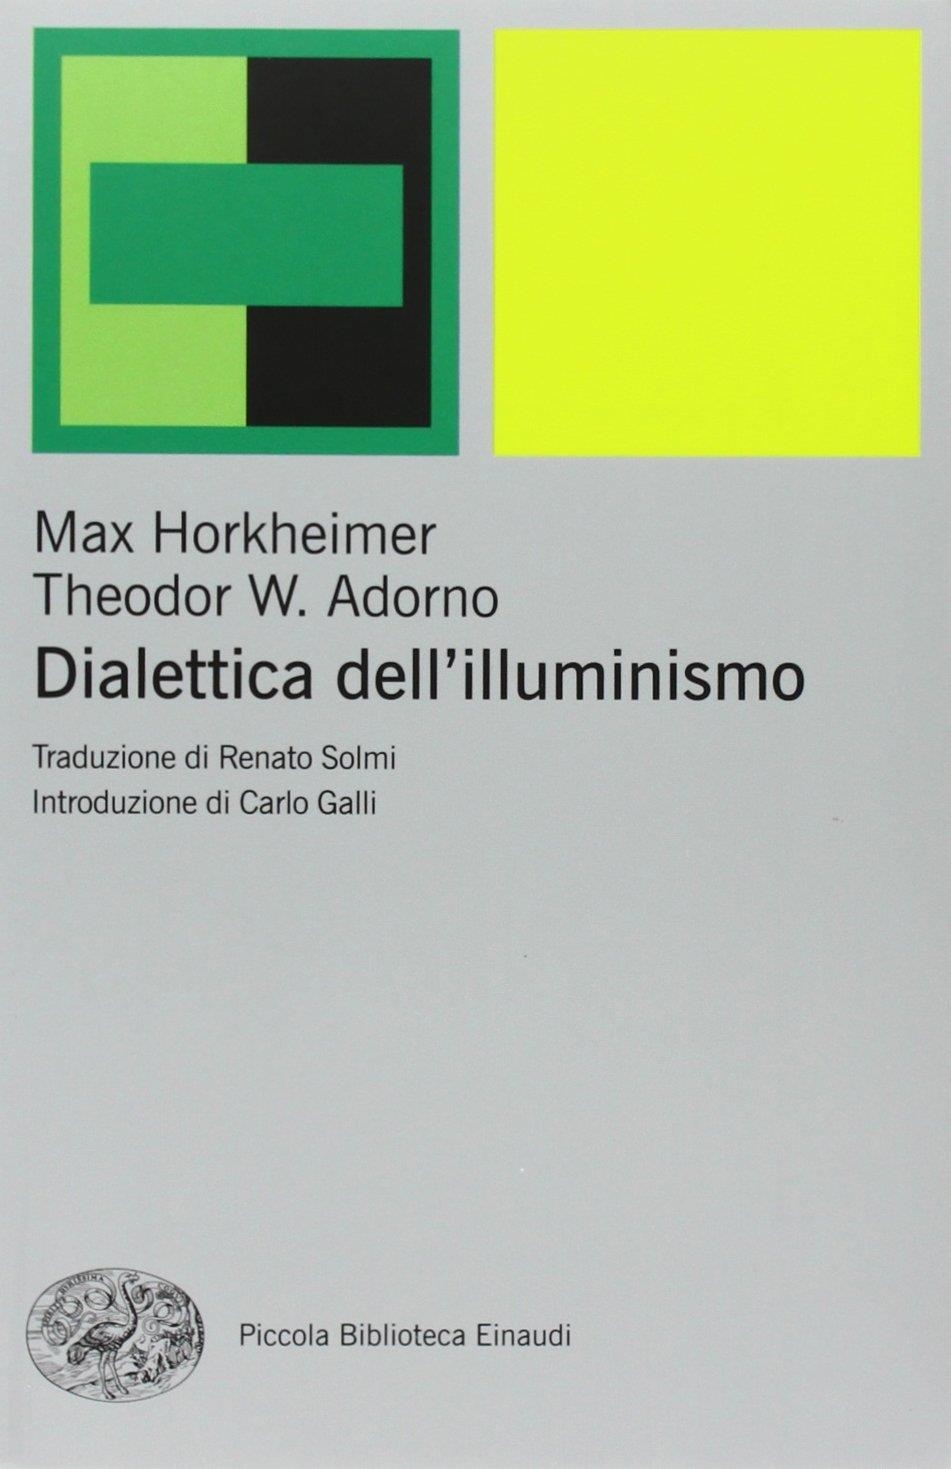 Libri Max Horkheimer / Theodor W. Adorno - Dialettica Dell'Illuminismo NUOVO SIGILLATO, EDIZIONE DEL 12/03/2010 SUBITO DISPONIBILE